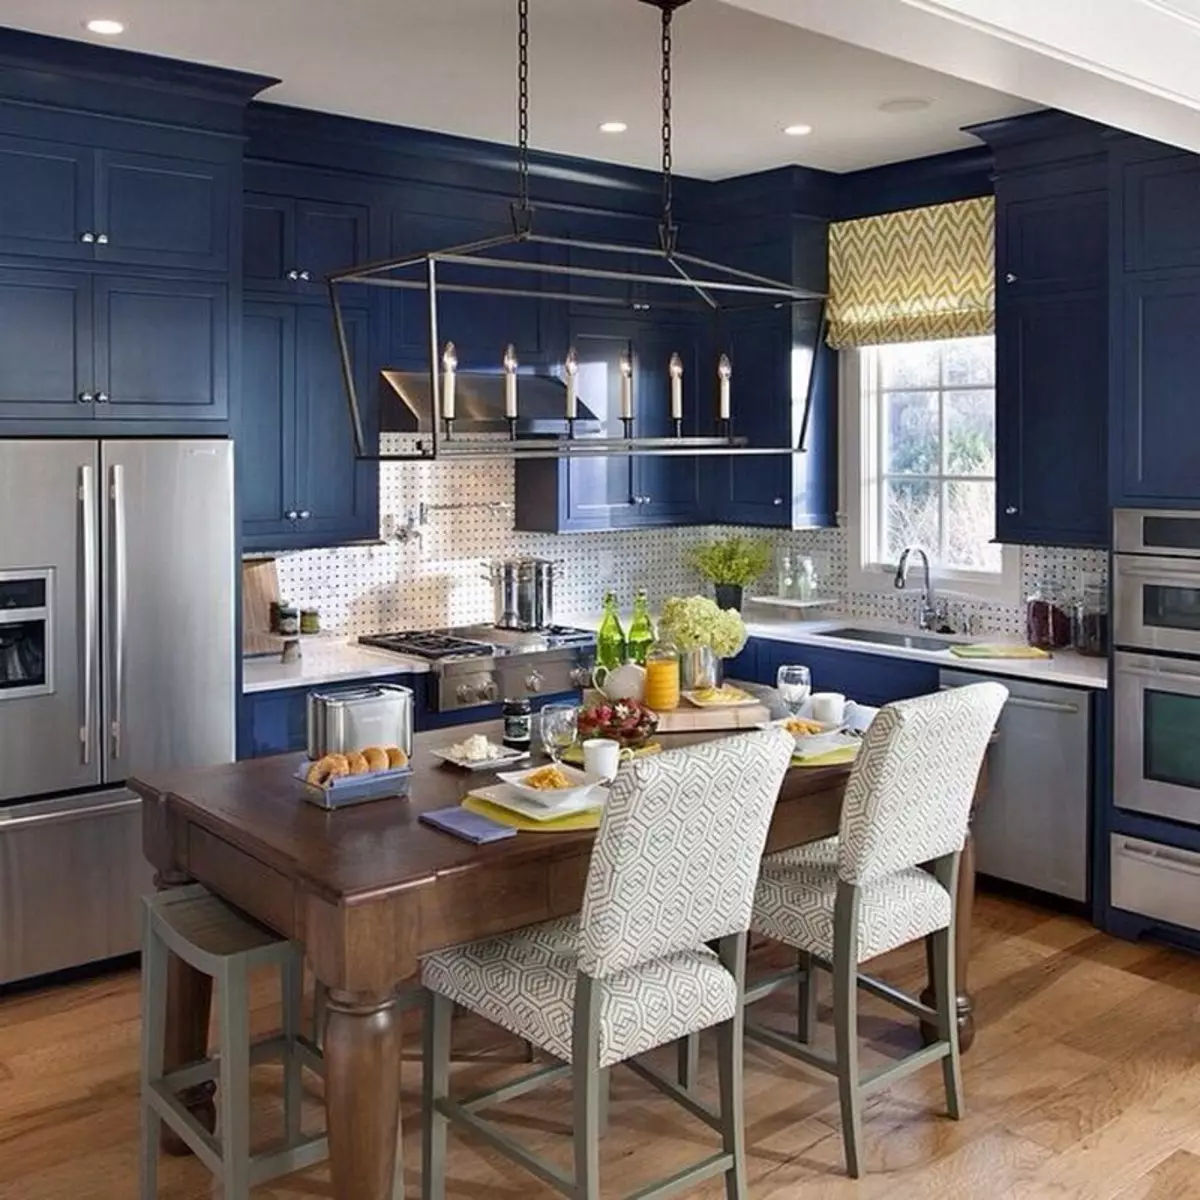 Baltā zilā virtuve (64 fotoattēli): virtuves austiņu iezīmes baltā zilā krāsā virtuves interjera dizainam, akcentiem uz sienām līdzīgām krāsām 9393_13